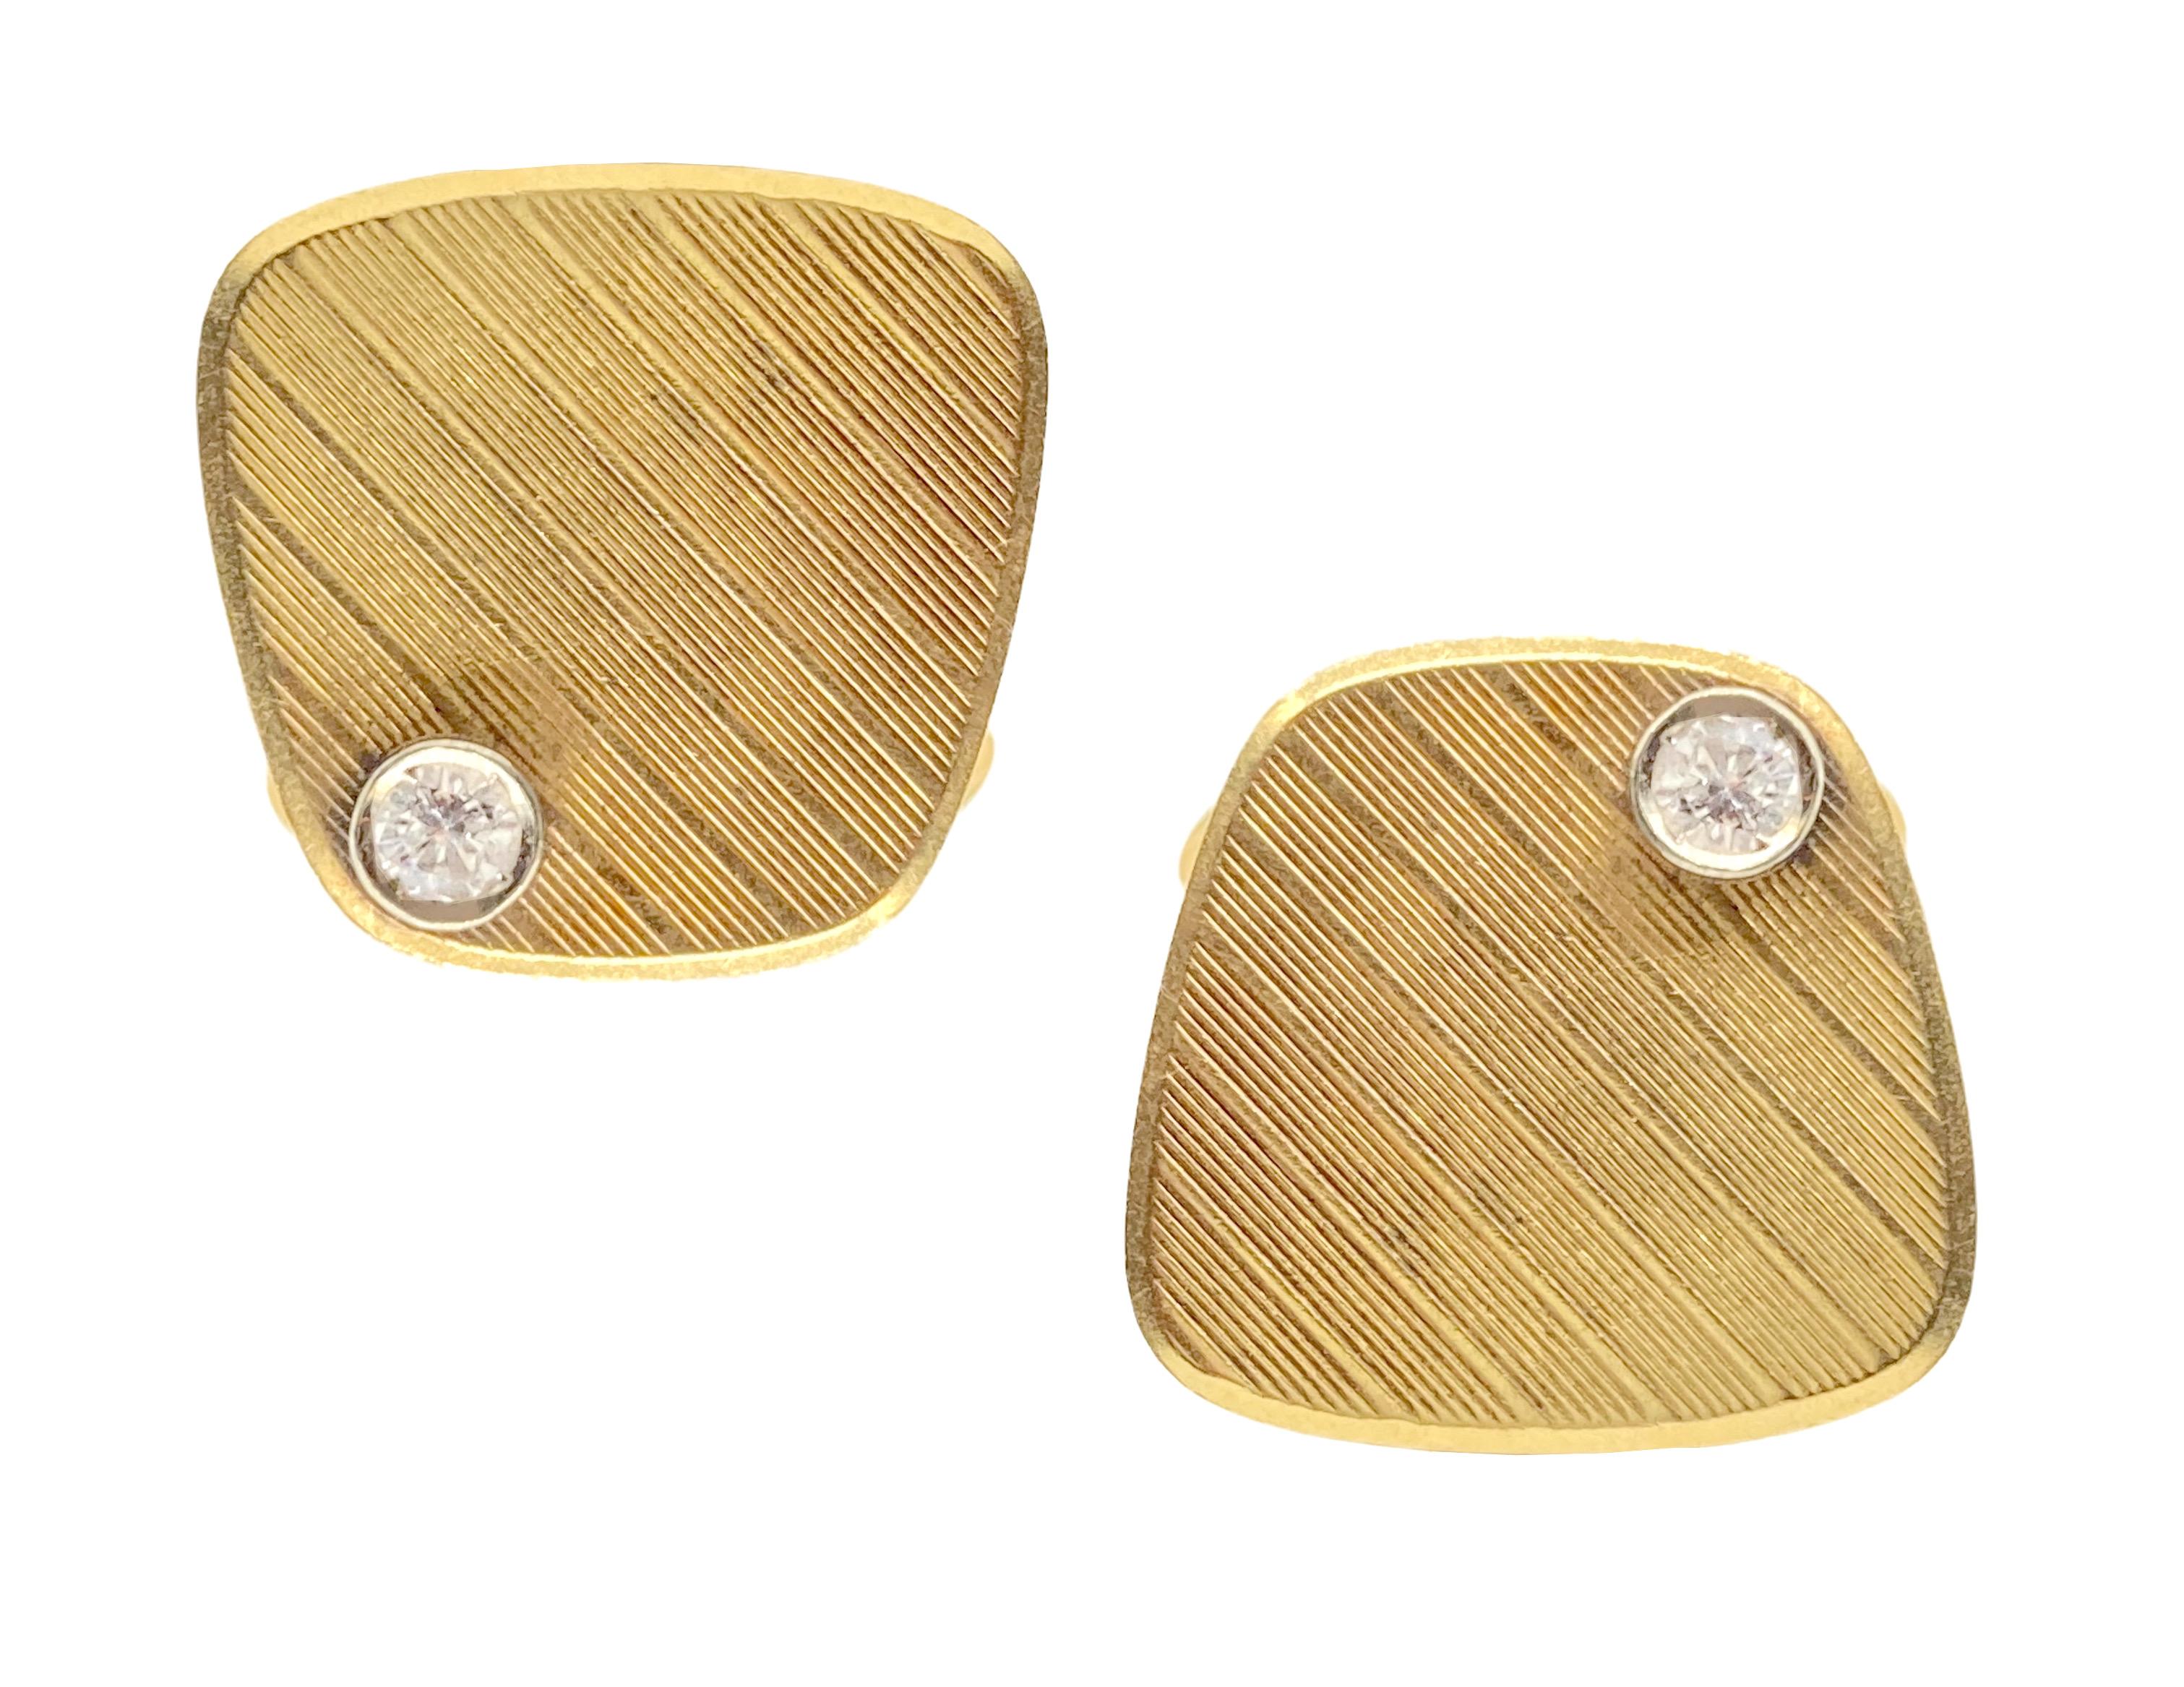 Boutons de manchette rétro en or jaune 18 carats rehaussés de diamants ronds taille brillant. Vers 1950.